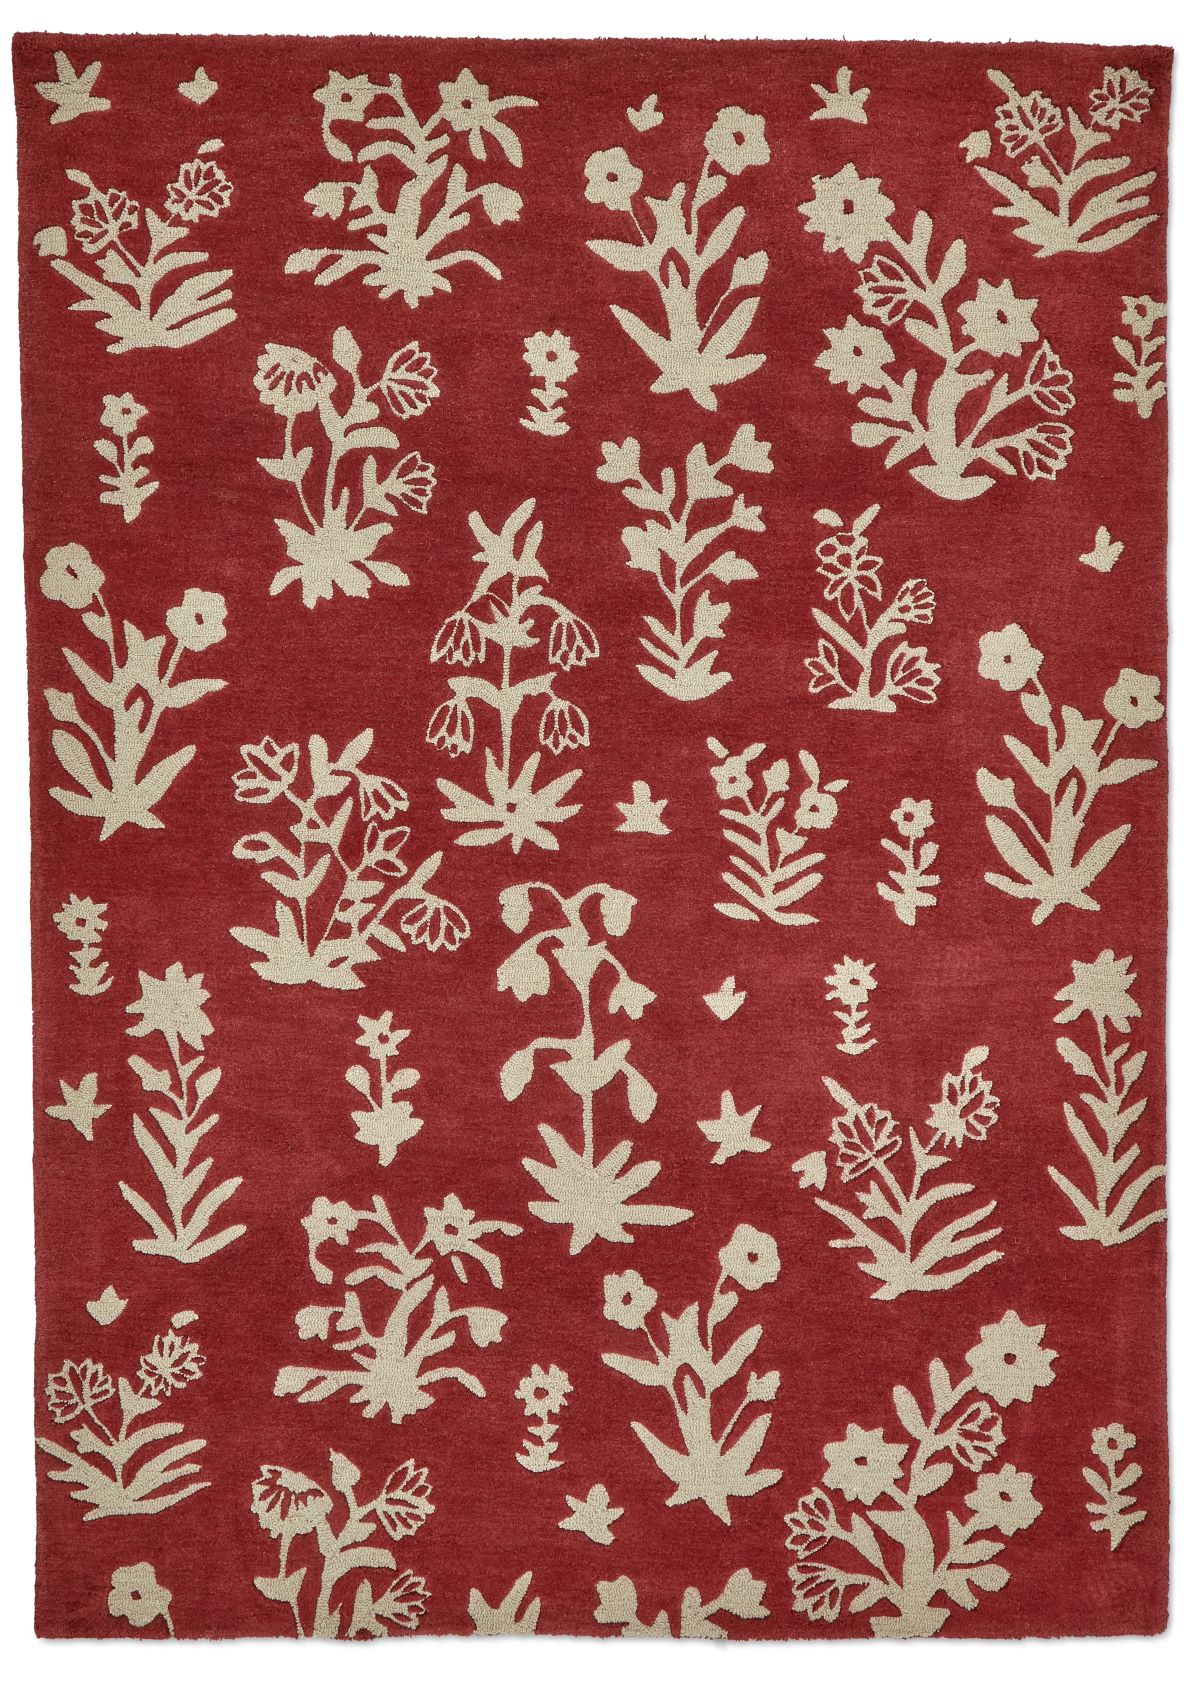 sanderson-rug-woodland-glade-linen-damson red-146800